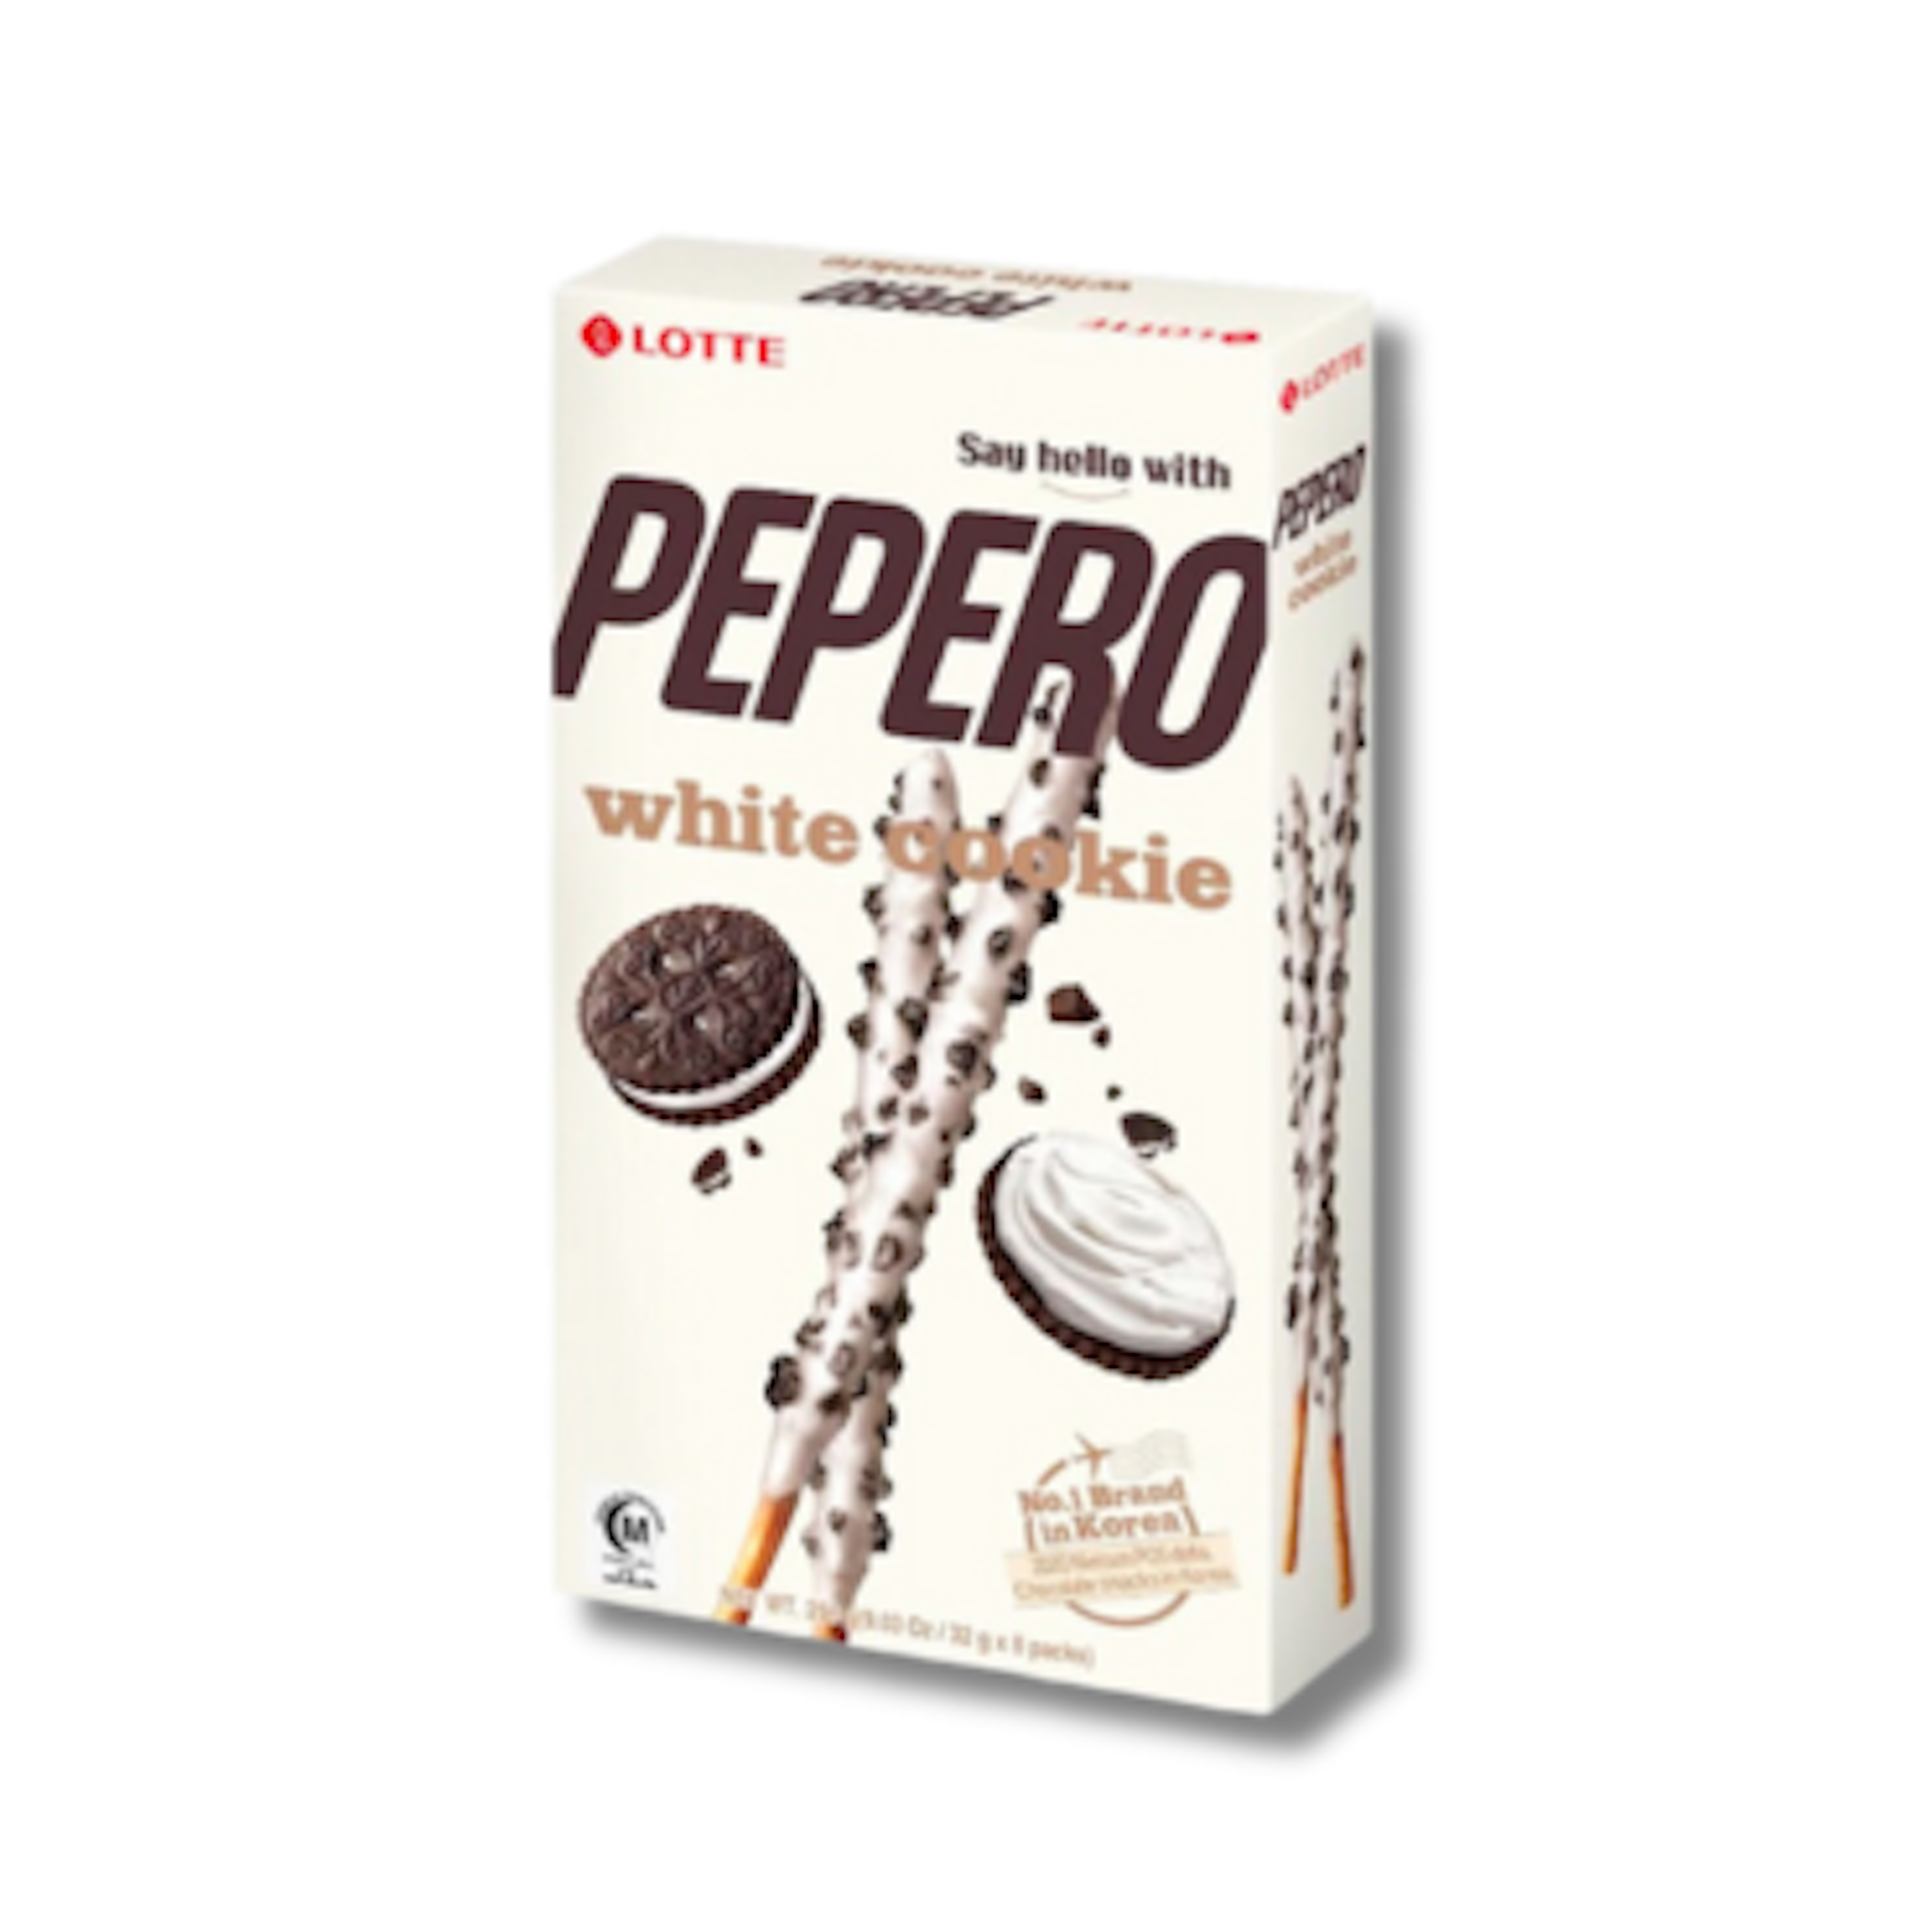 Lotte Pepero White Cookie - Leckere weiße Schokoladenkeksstangen, 32g